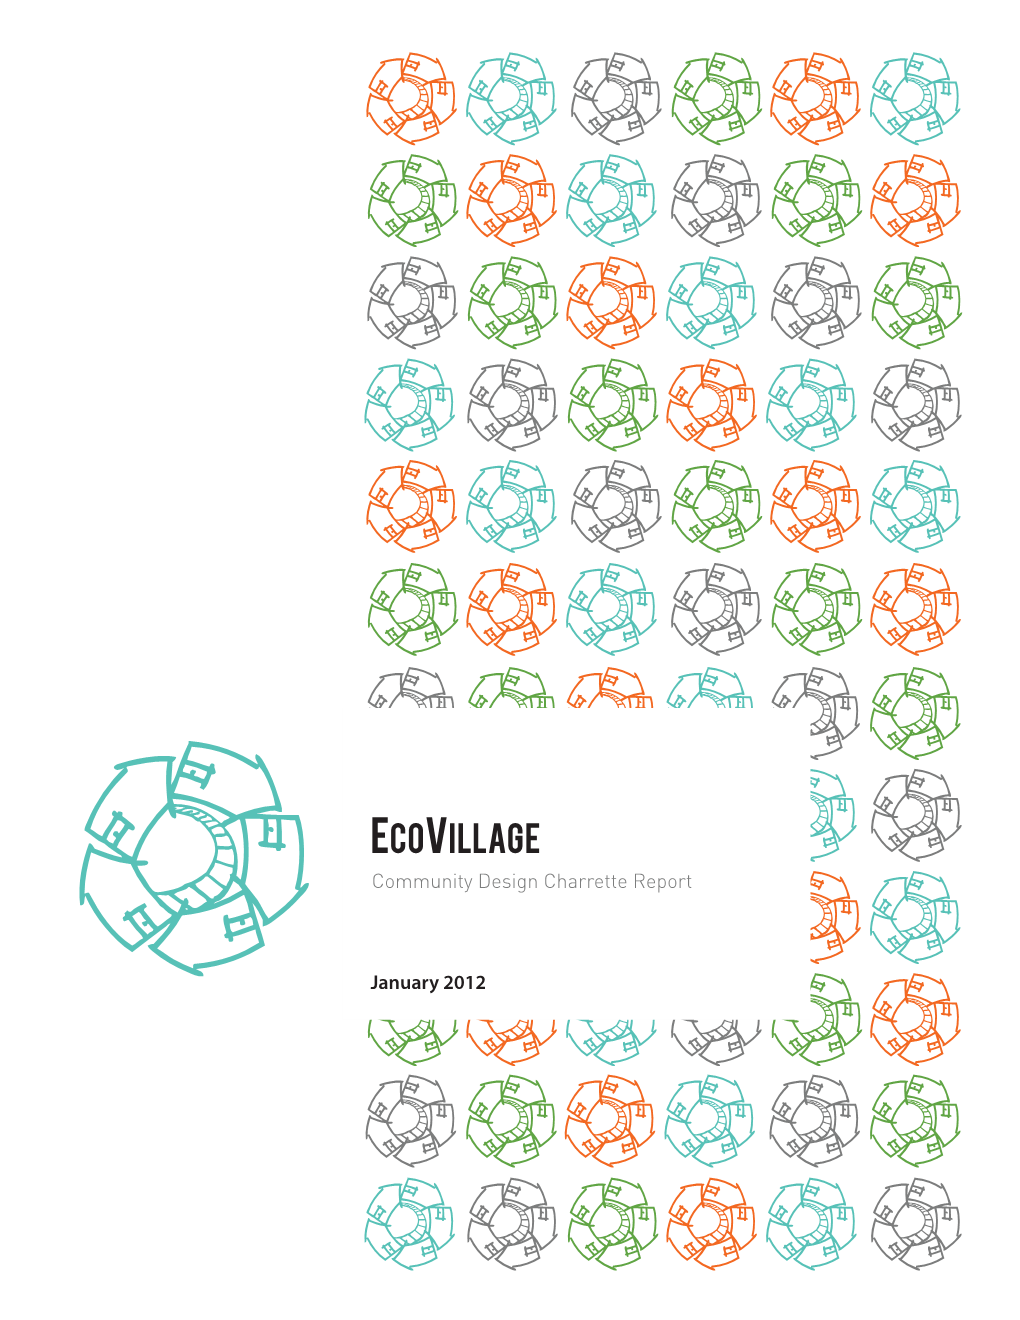 Ecovillage Community Design Charrette Report